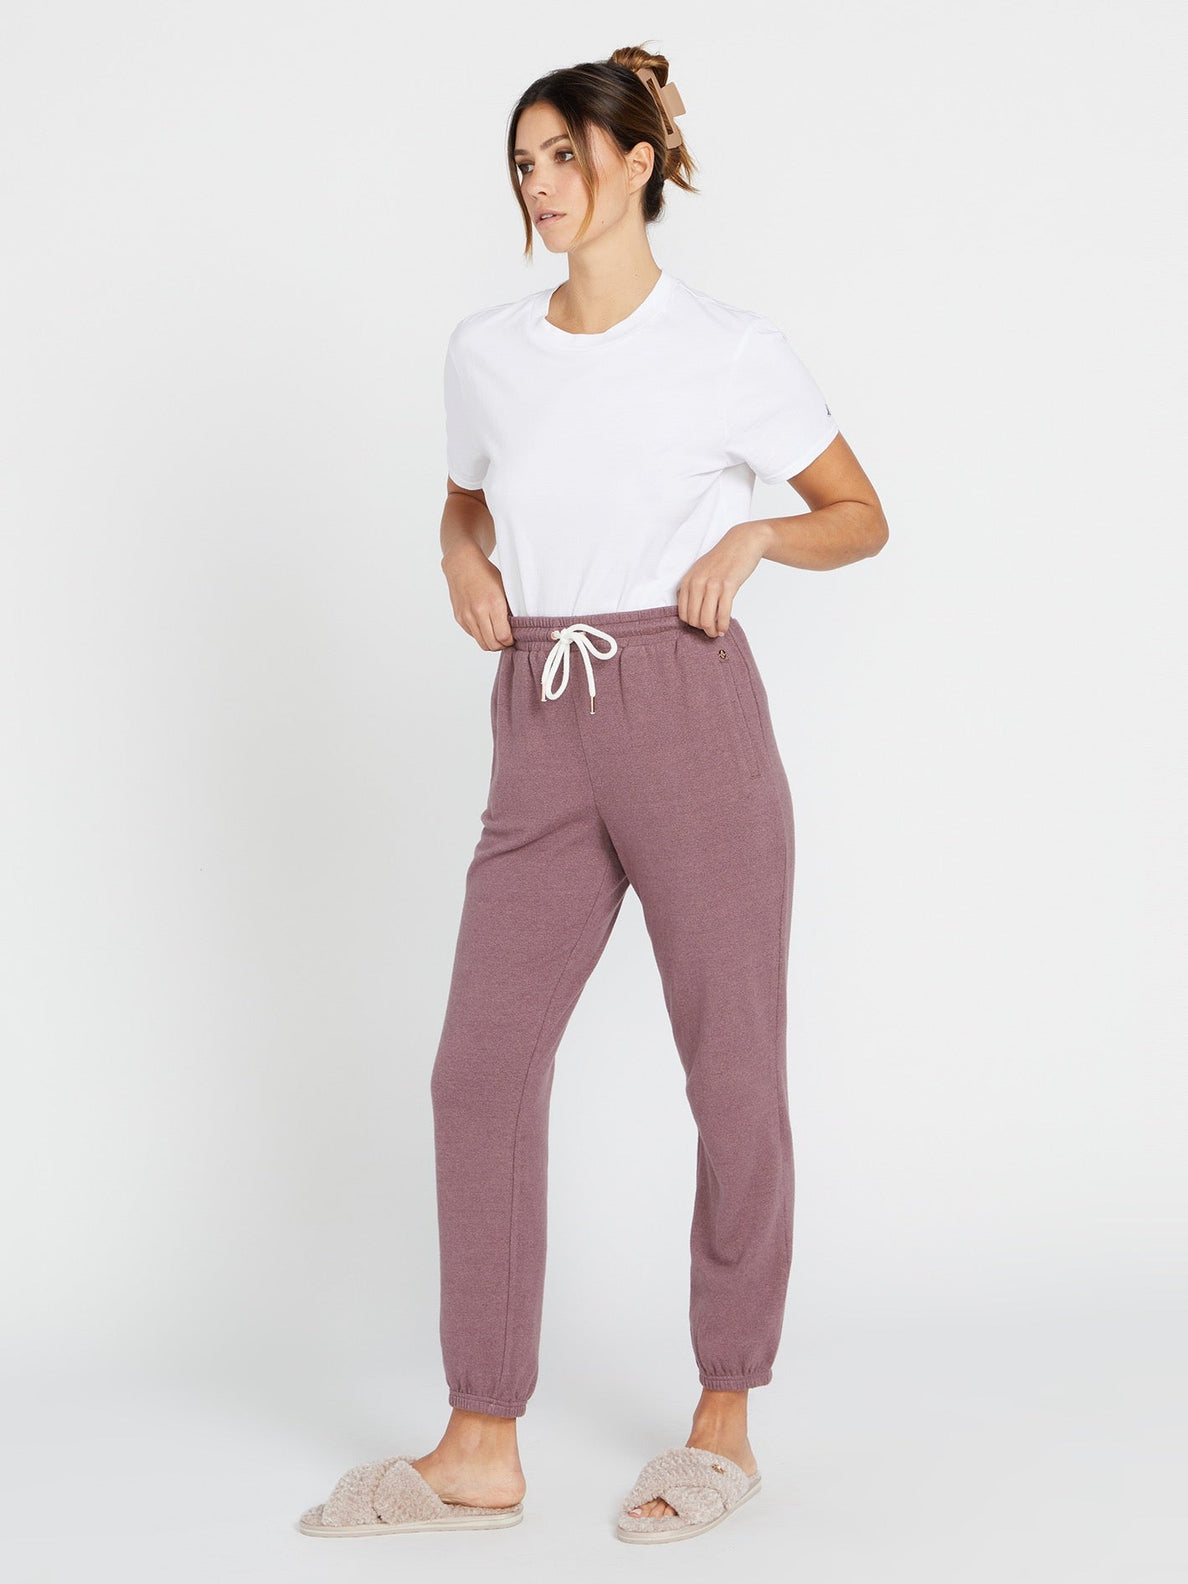 Wearever Fleece Relaxed Women's Tall Sweatpants Oatmeal Mix